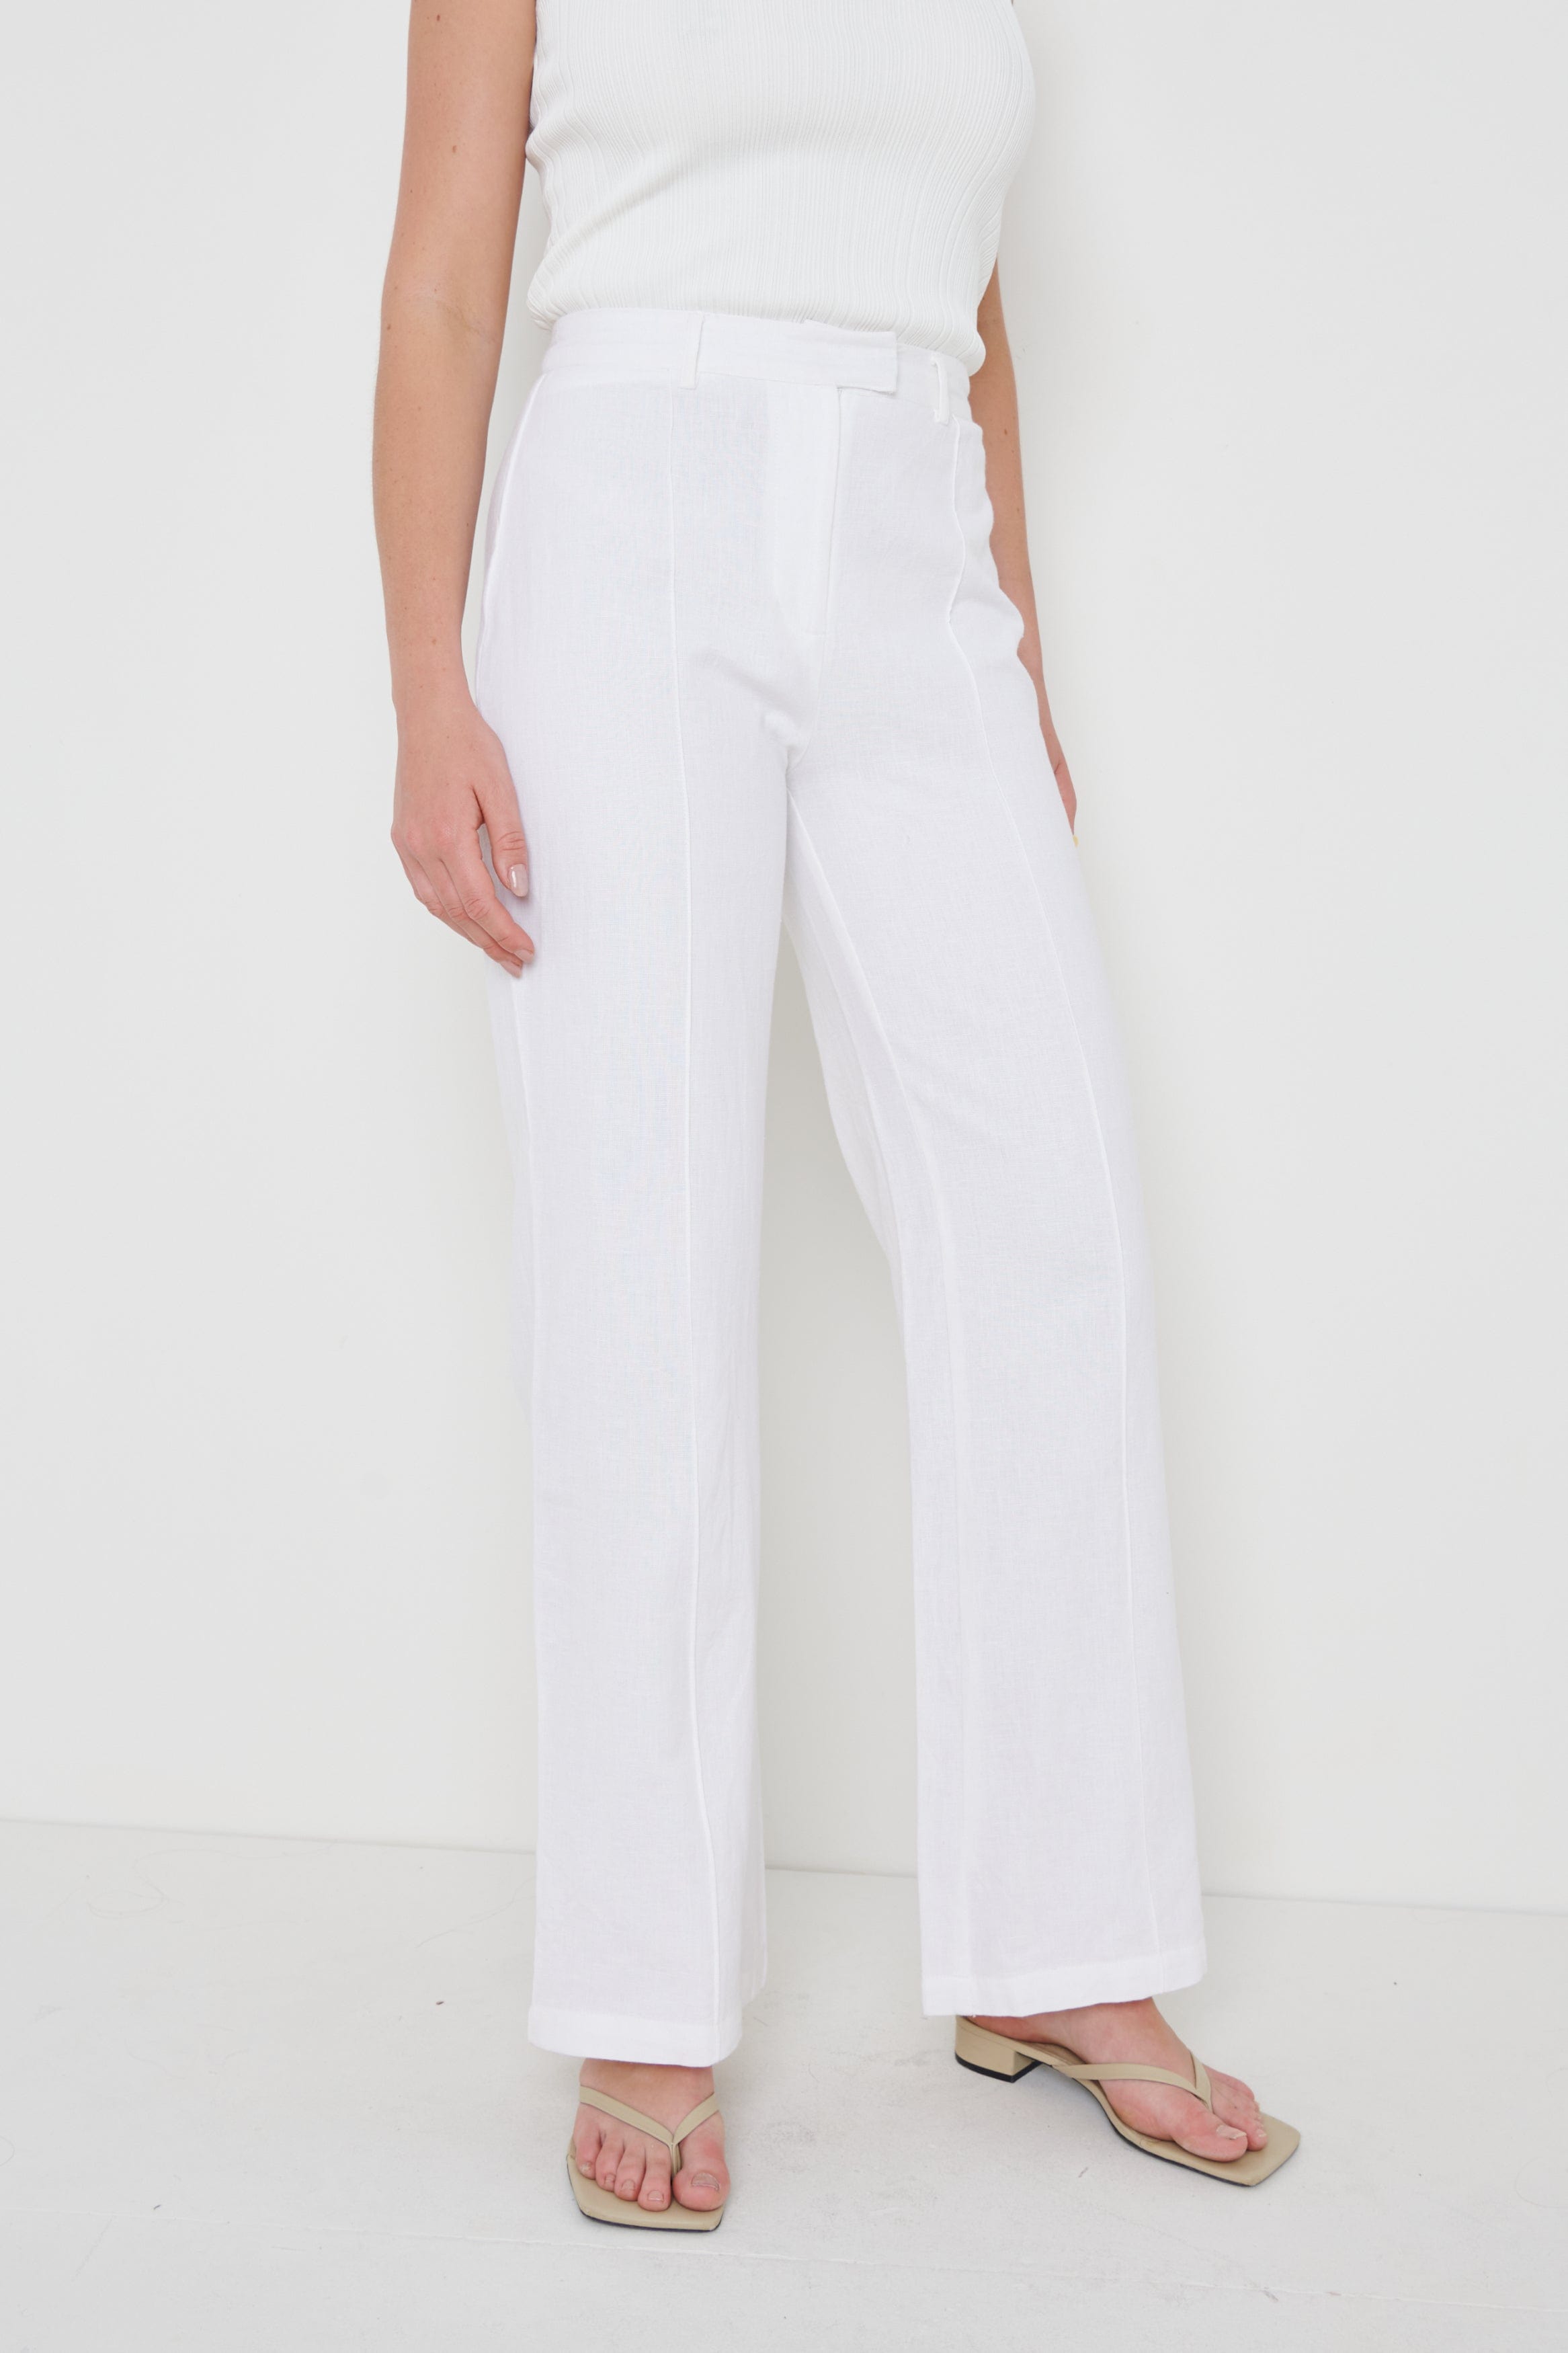 Marlowe Linen Trousers - Cream, 8